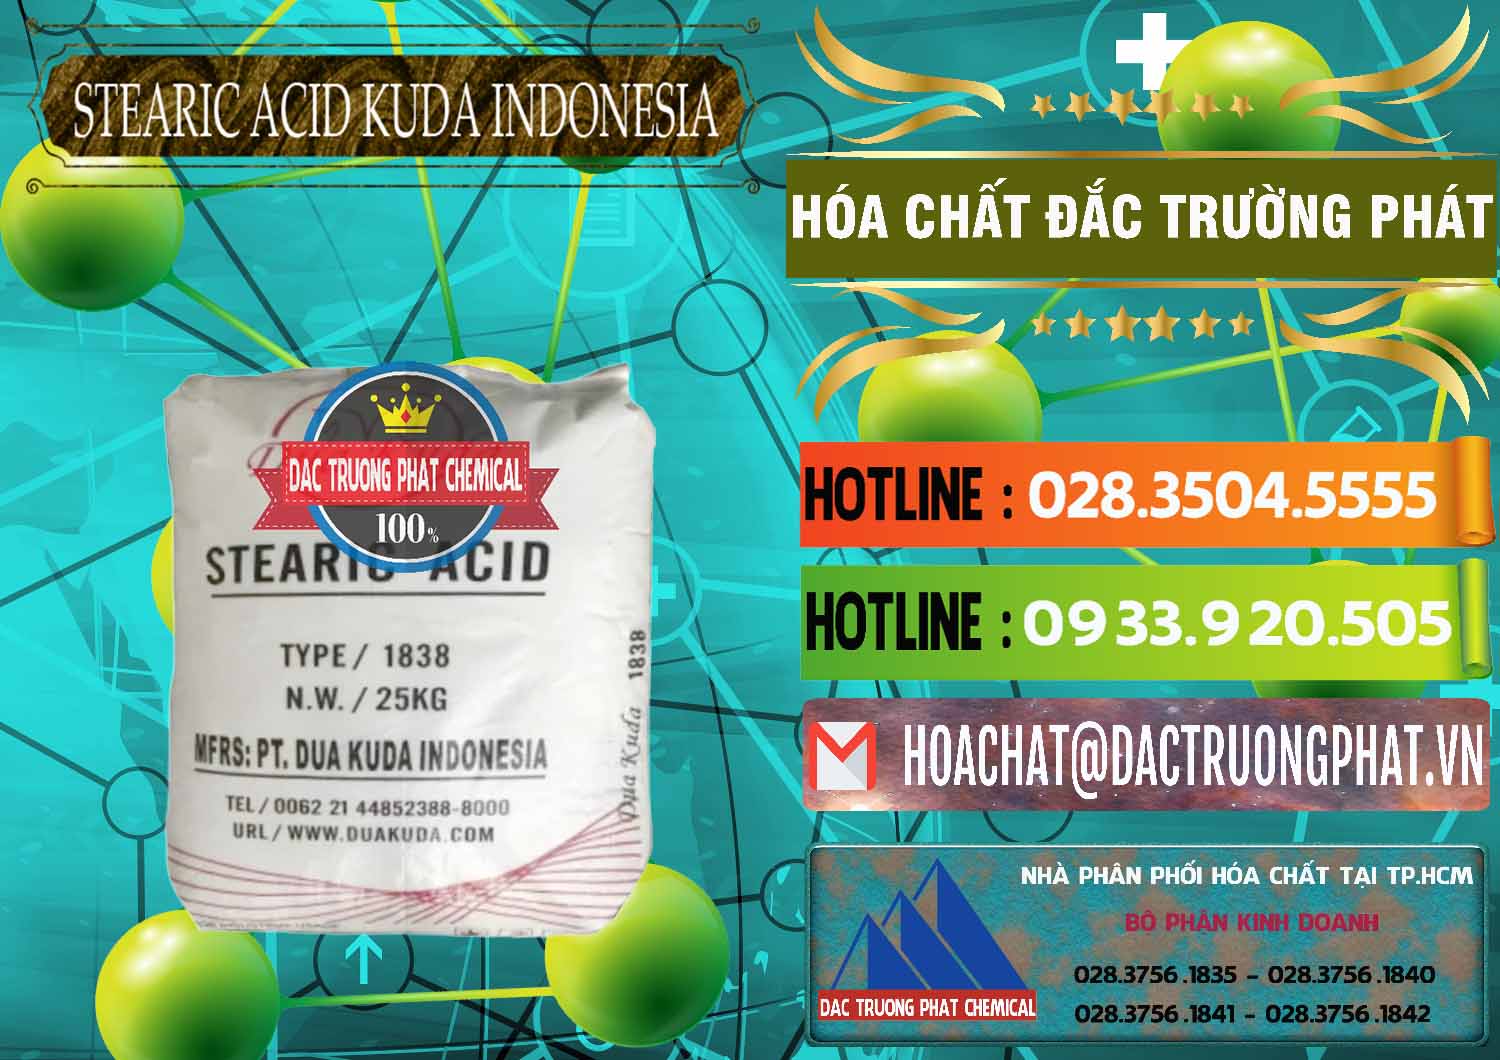 Nhà cung cấp và bán Axit Stearic - Stearic Acid Dua Kuda Indonesia - 0388 - Công ty bán ( cung cấp ) hóa chất tại TP.HCM - cungcaphoachat.com.vn